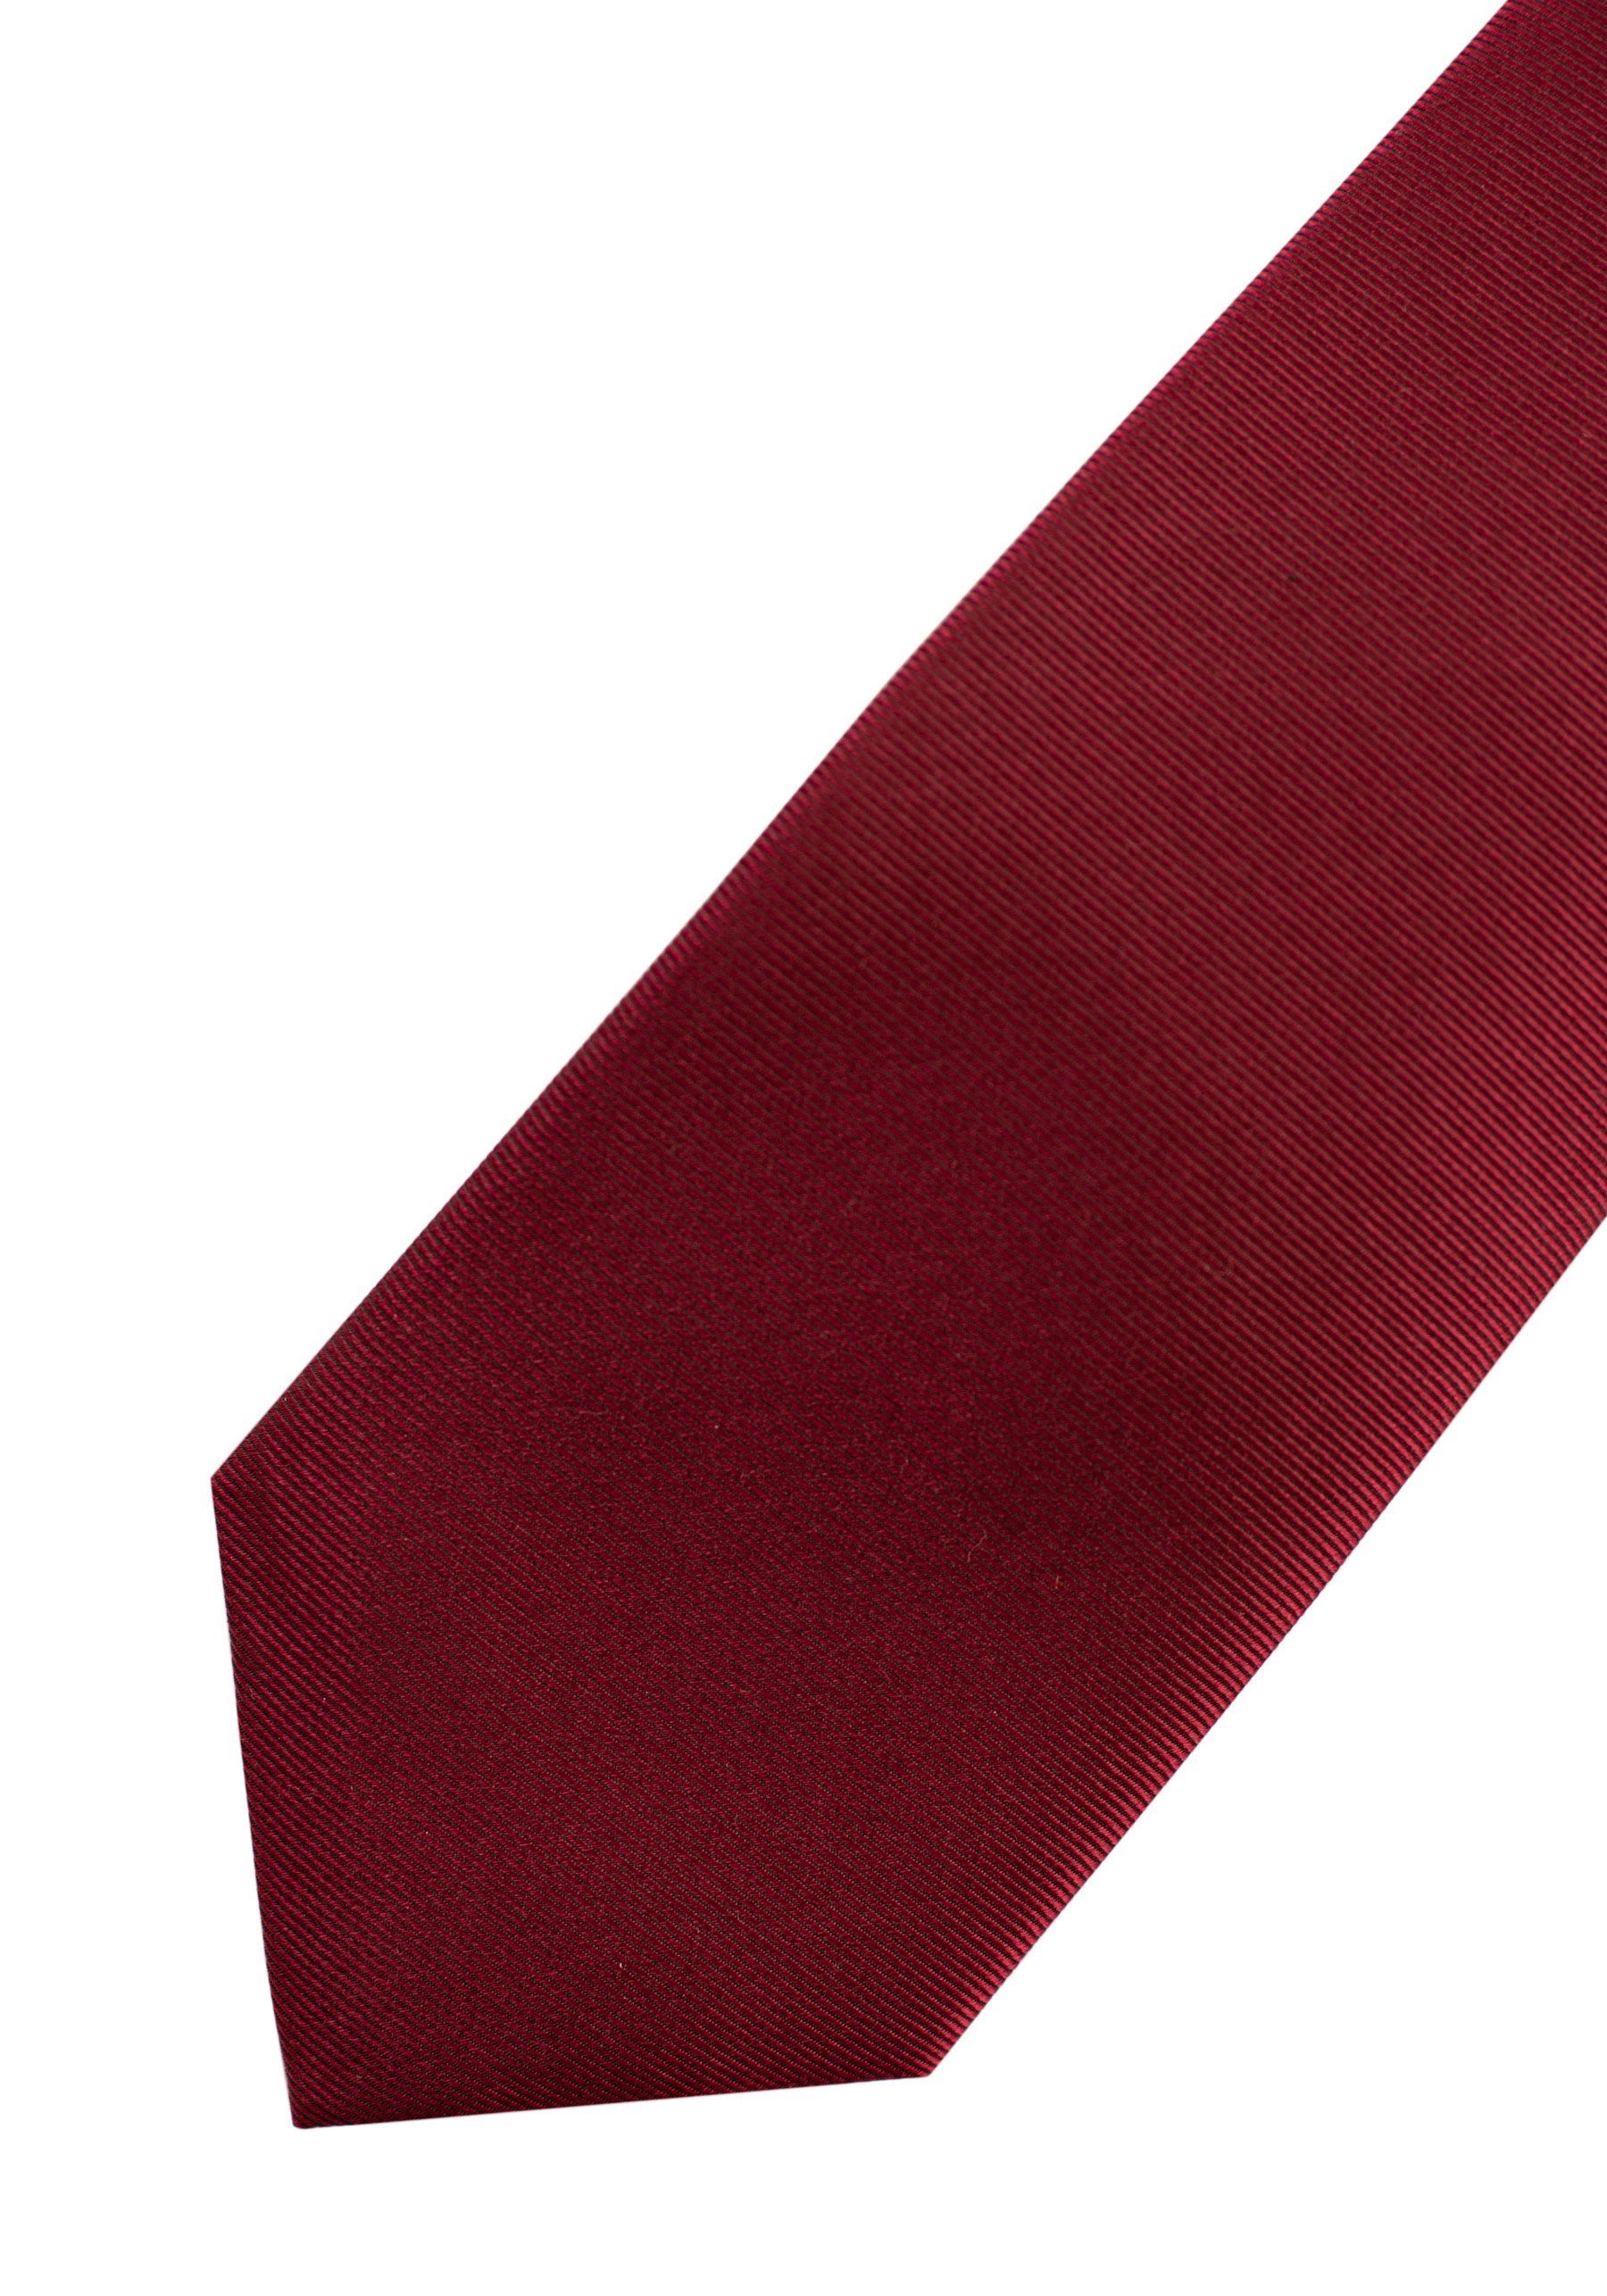 red dark Roy mit Robson Musterung Krawatte aus Seide feiner - 100%